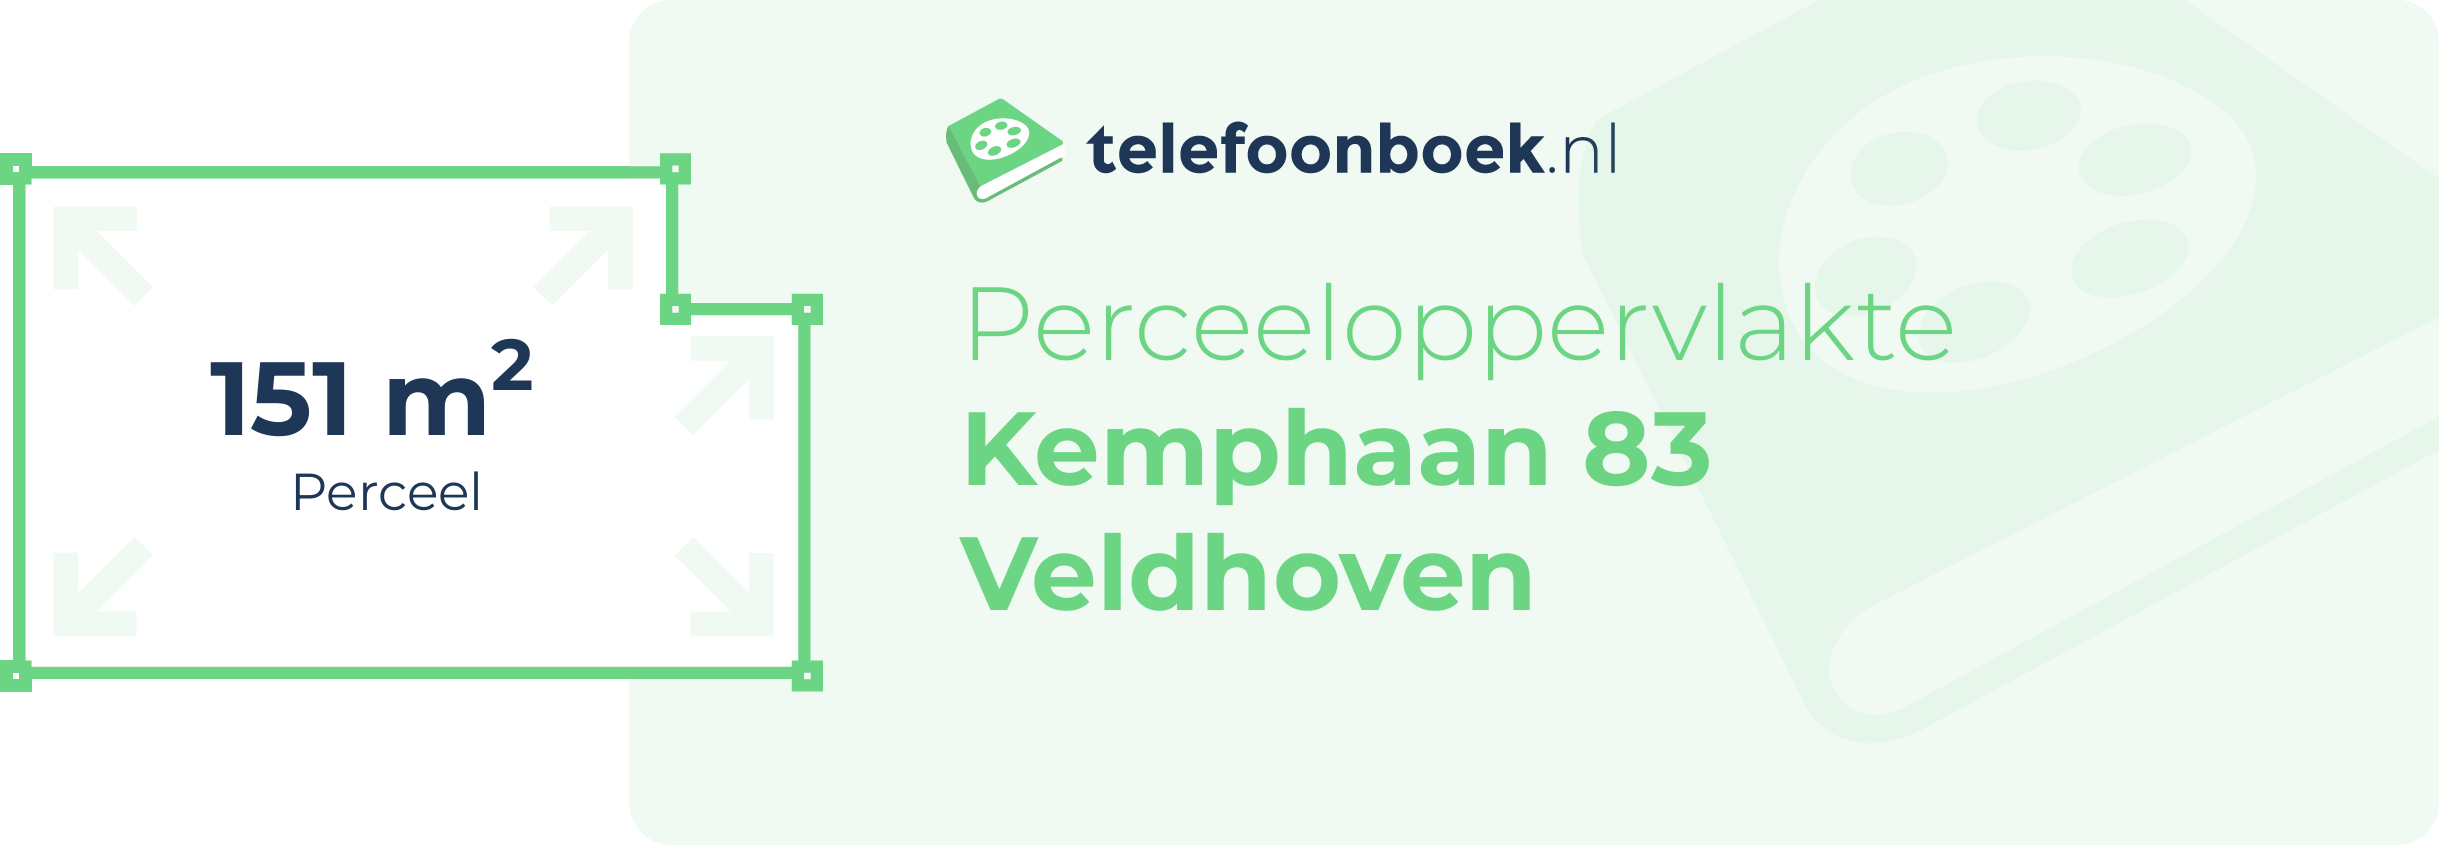 Perceeloppervlakte Kemphaan 83 Veldhoven